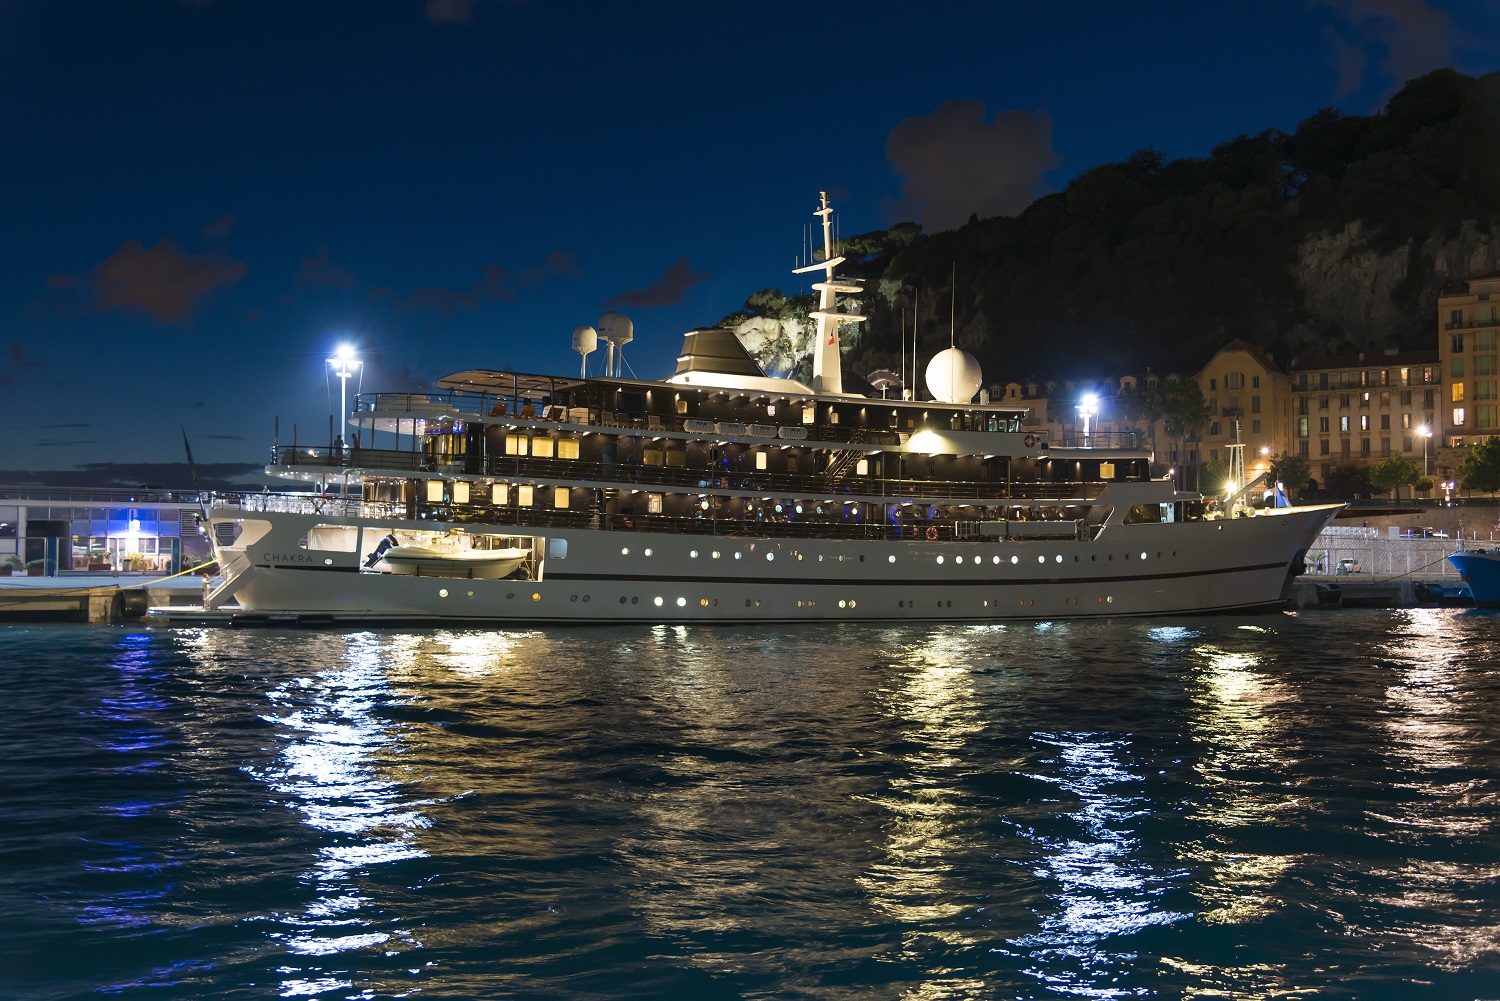 Motor yacht CHAKRA - By night